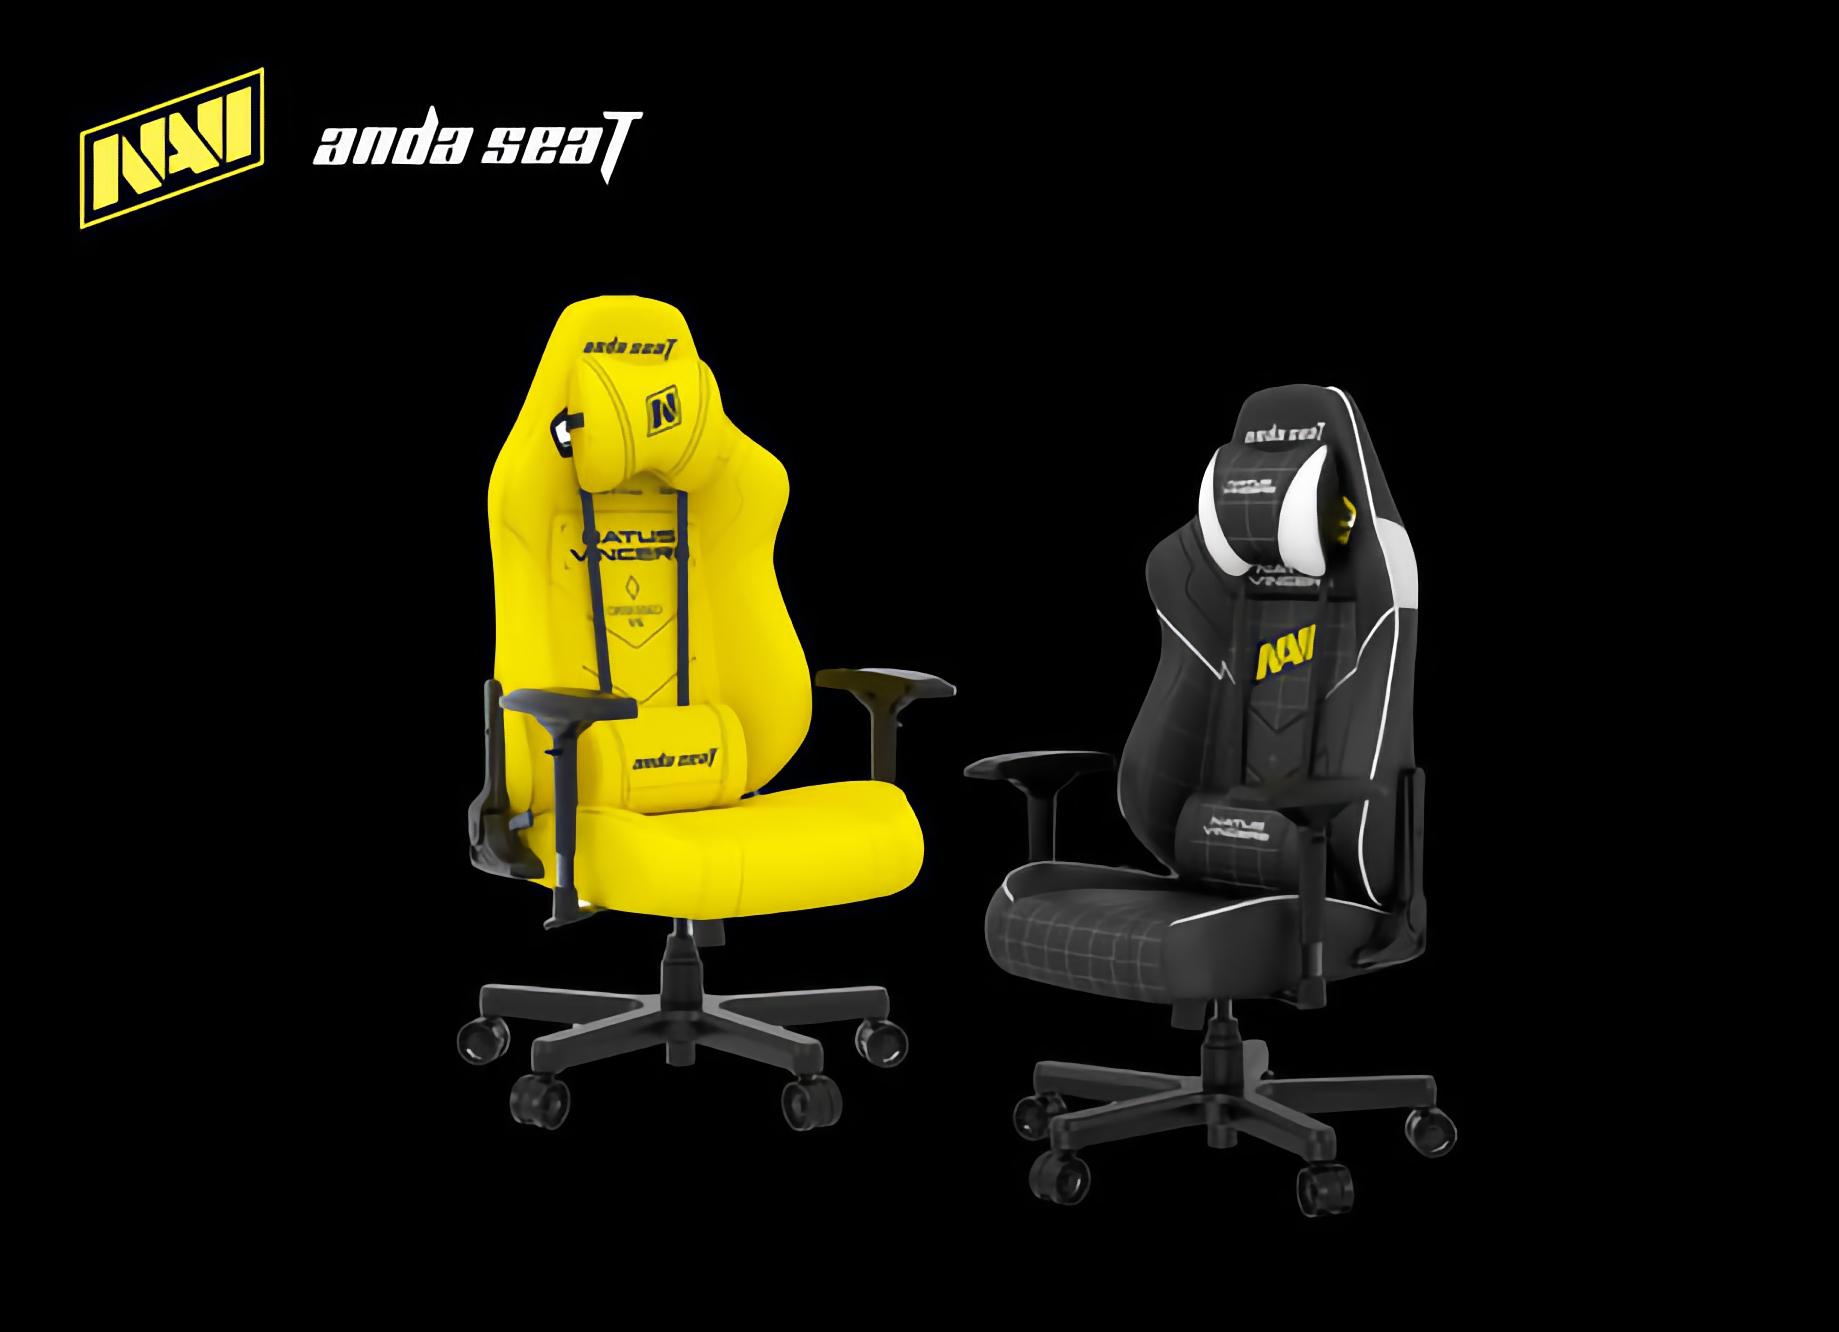 Anda Seat zaprezentowała fotel dla graczy Navi Edition, z 10% zniżką na zamówienia przedpremierowe